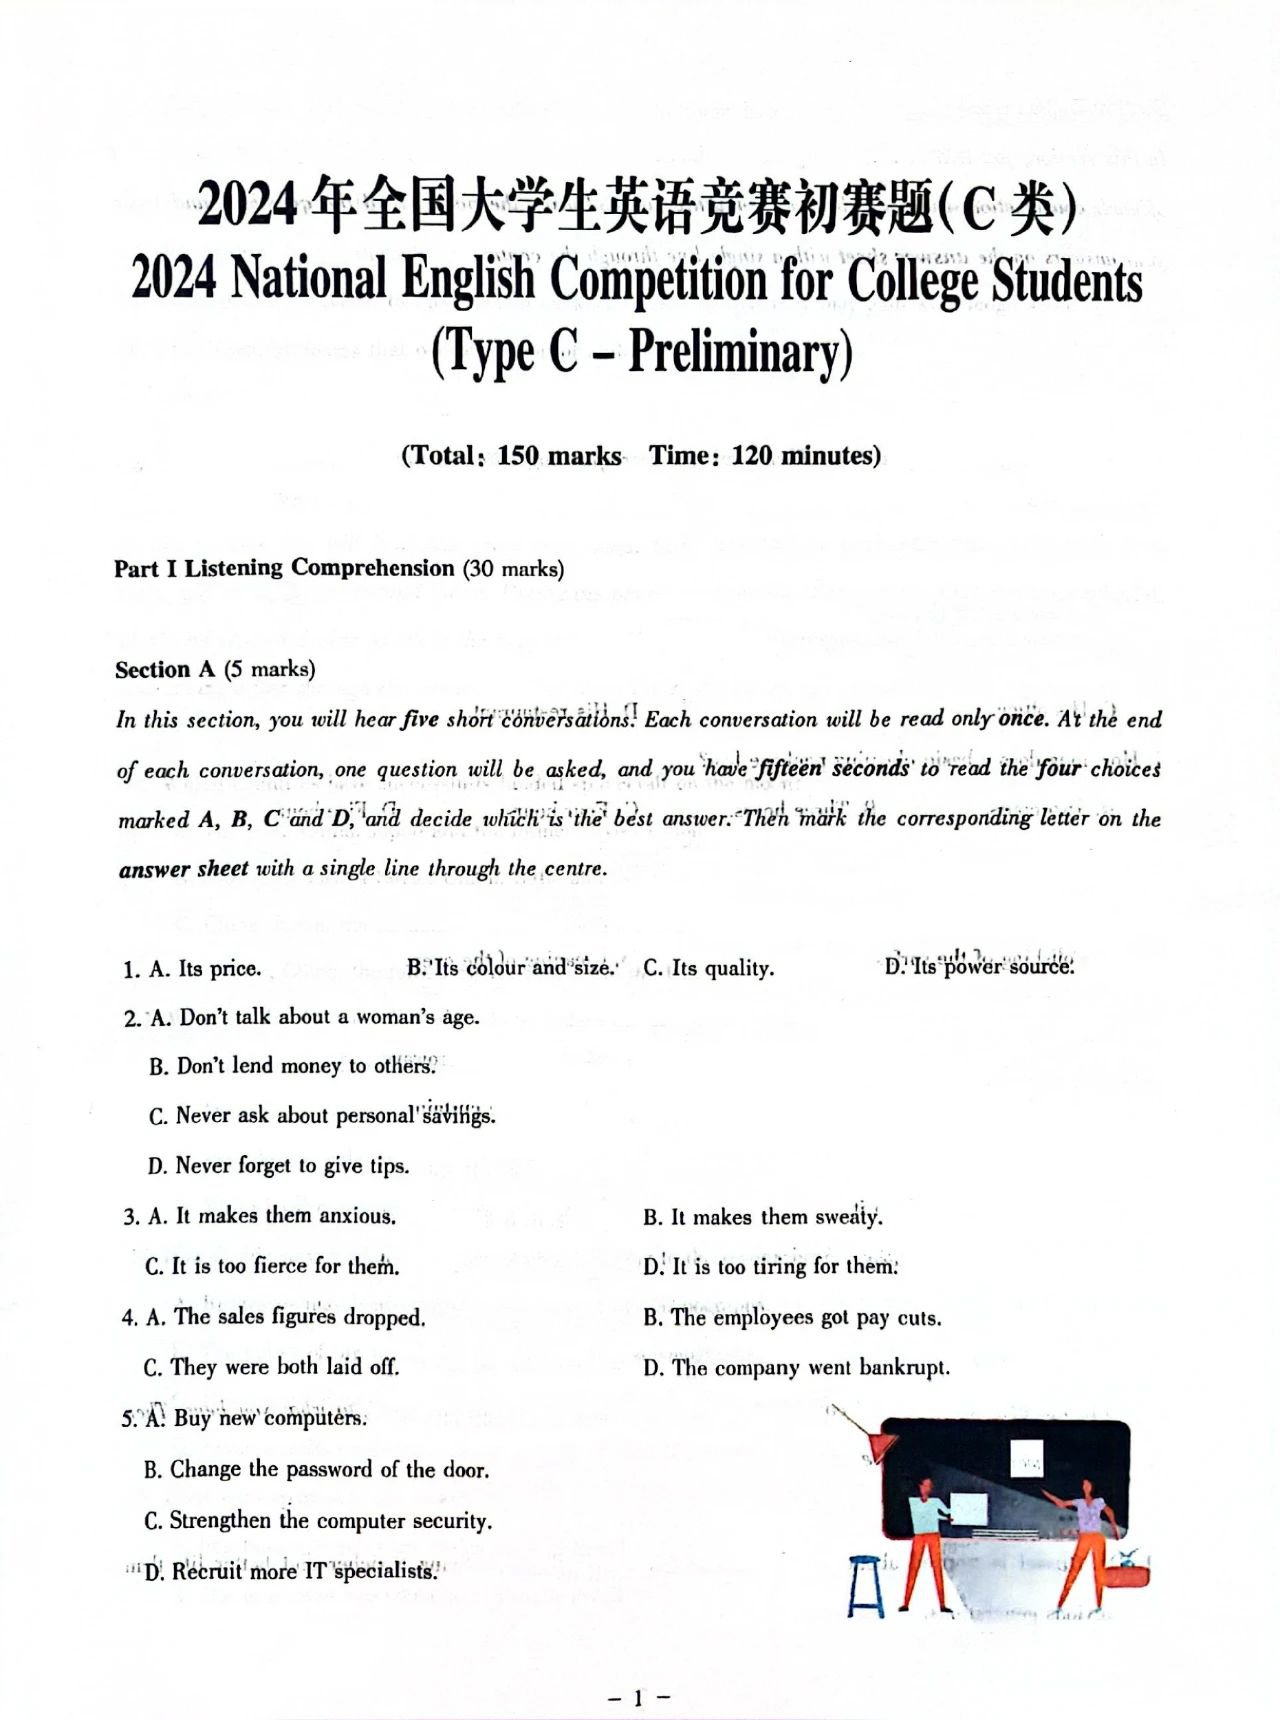 【大英赛答案】2024年全国大学生英语竞赛初赛题及参考答案(图4)